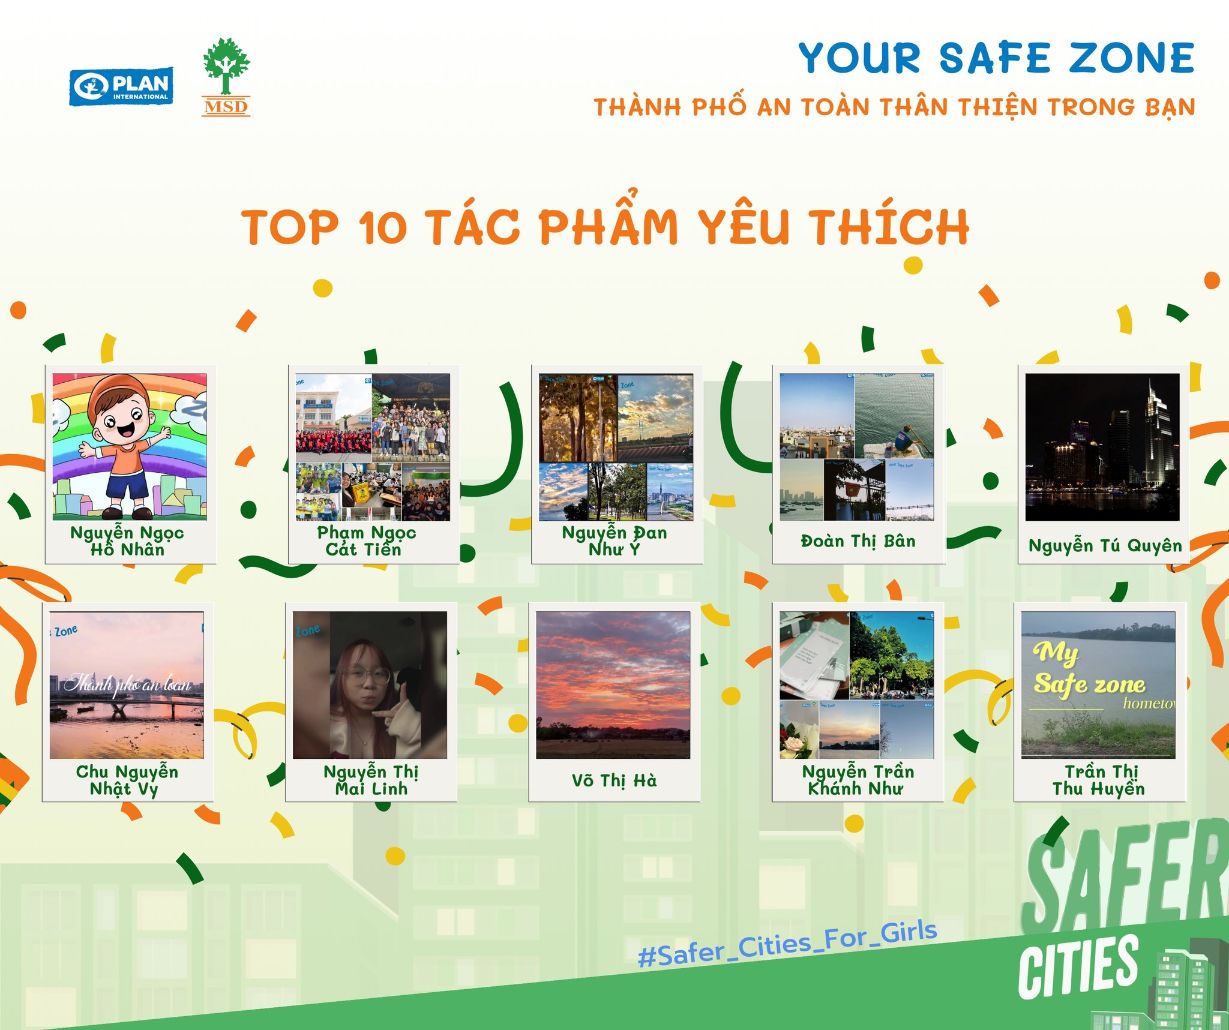 Your Safe Zone 3 Công bố kết quả cuộc thi Your Safe Zone – Thành phố An toàn và Thân thiện trong bạn